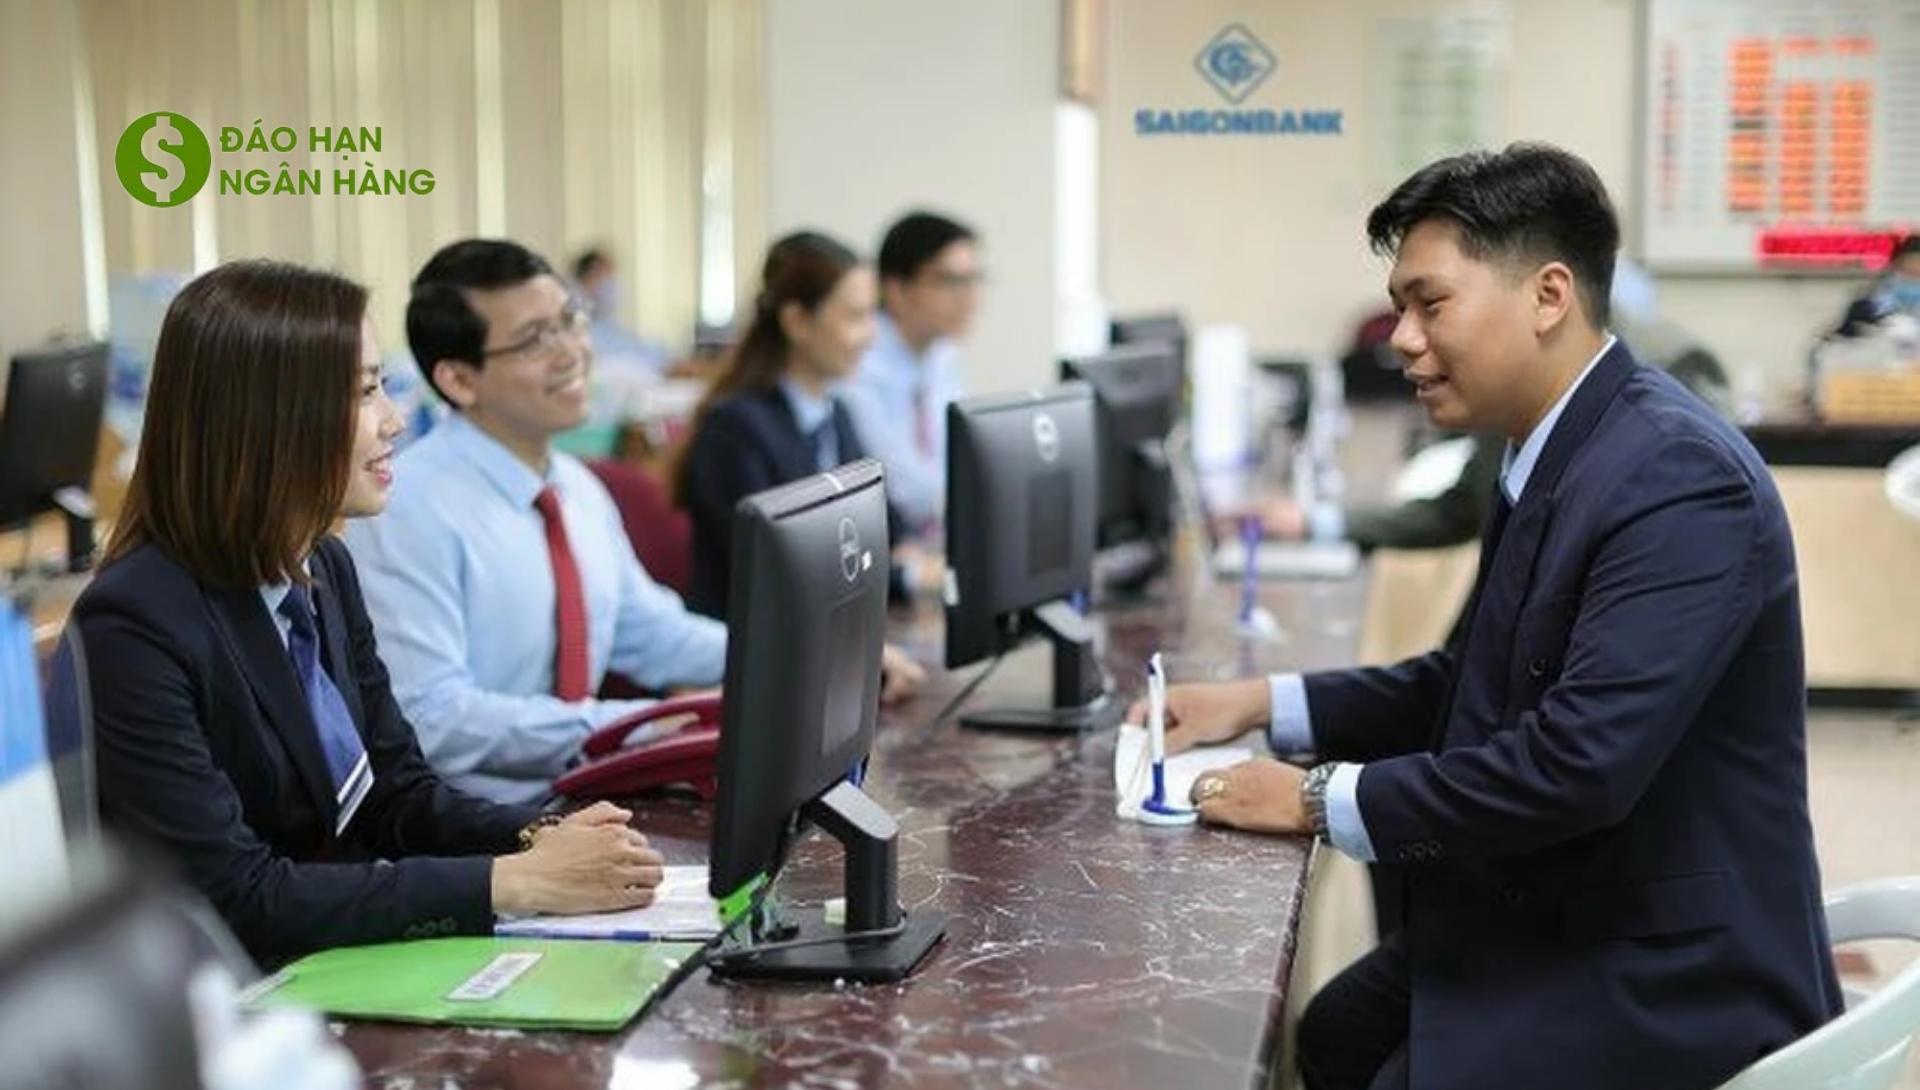 Lãi suất đáo hạn ngân hàng Saigon Bank 